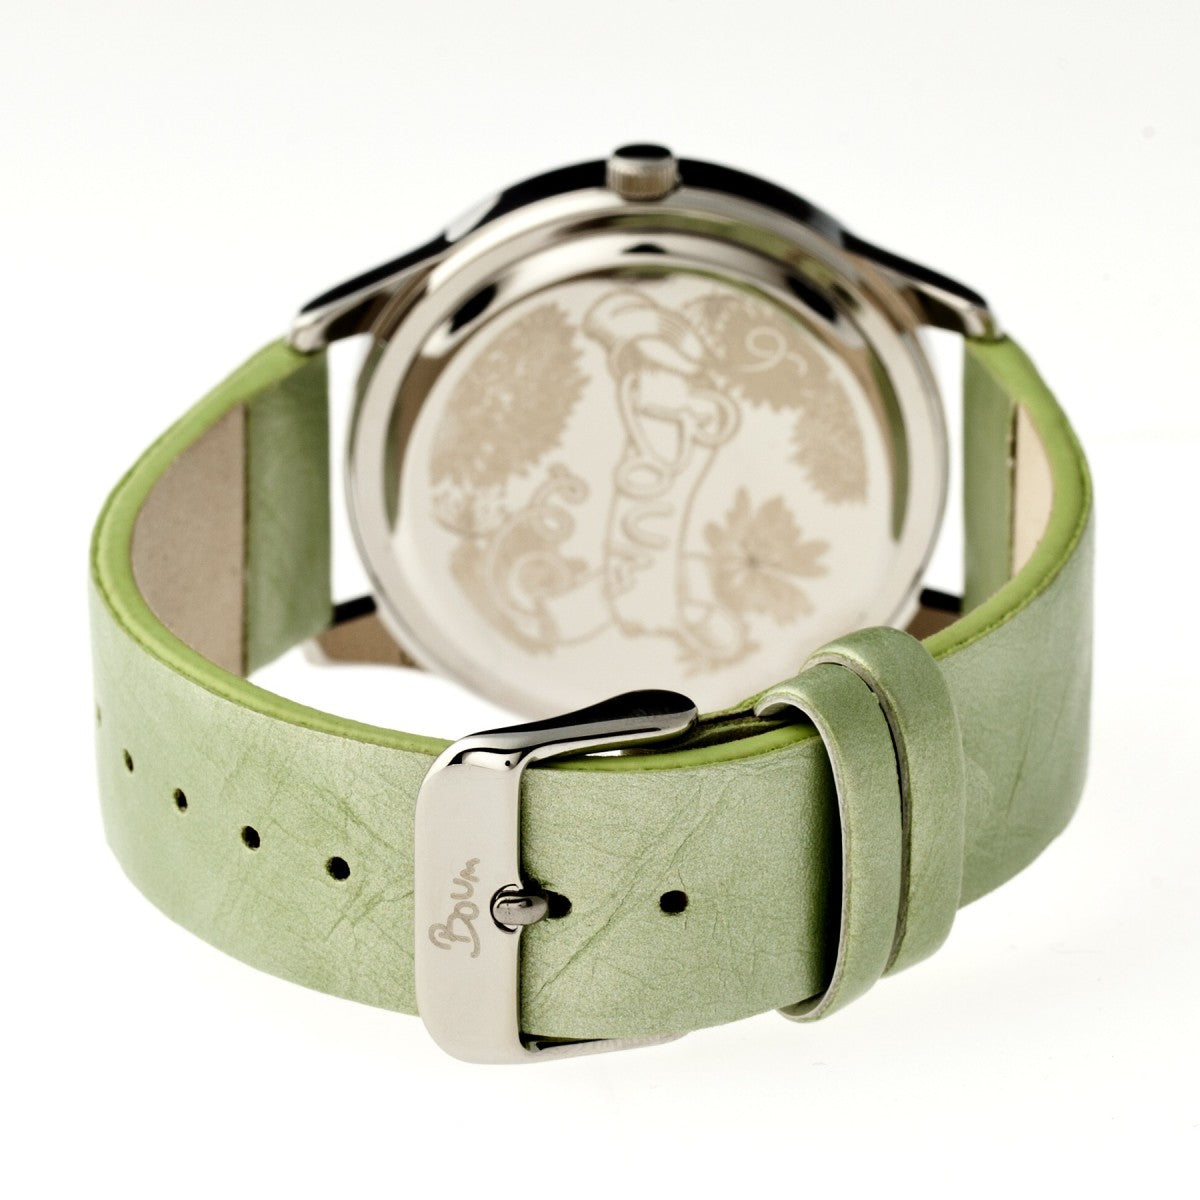 Boum Clique Crystal-Dial Ladies Bracelet Watch - Silver/Mint - BOUBM2501